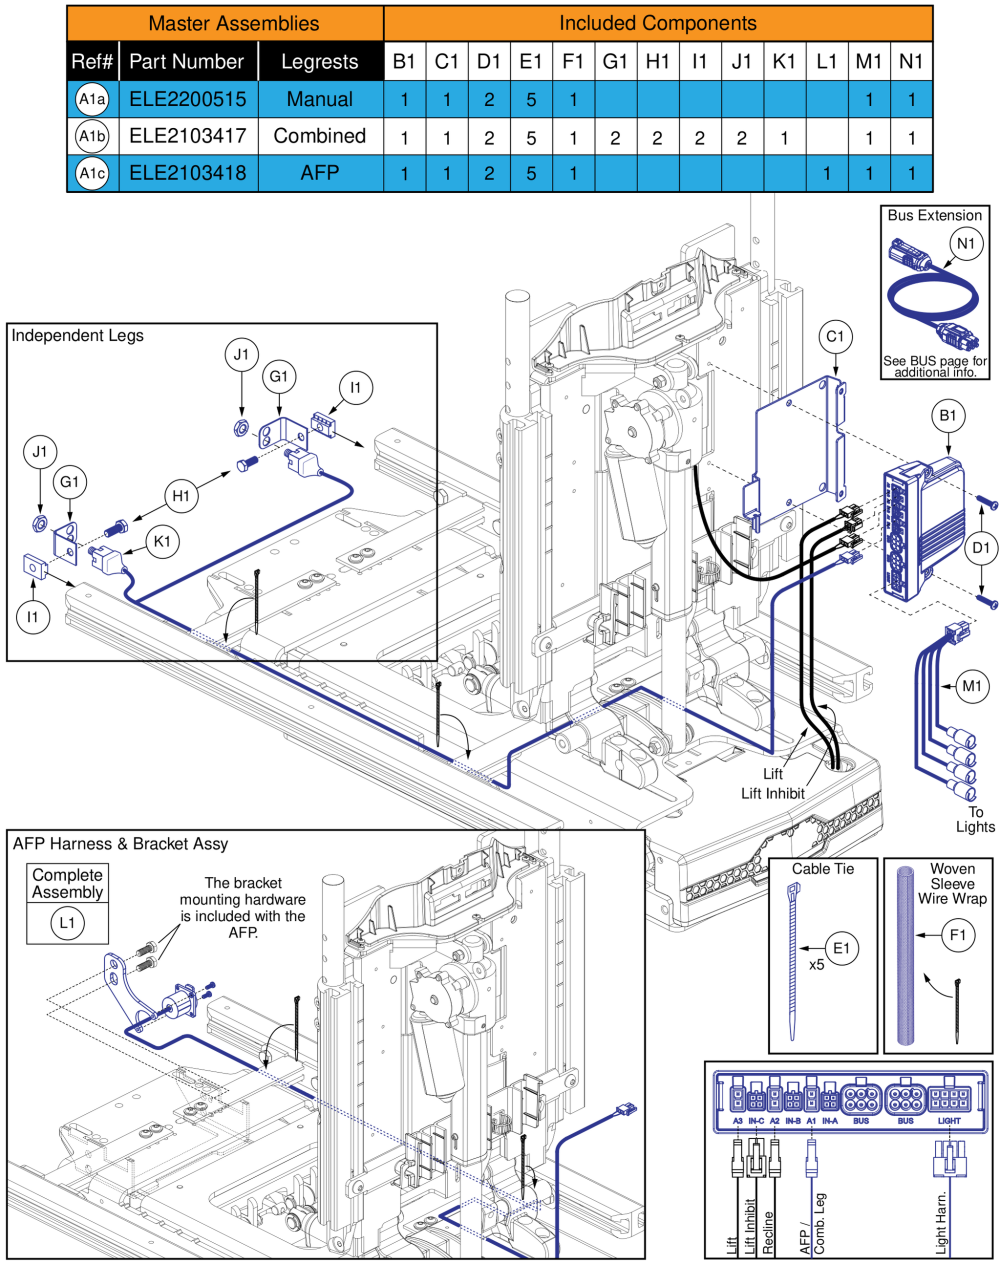 Ql3 Am3l, Tb3 Lift & Recline (r44 Rival) parts diagram